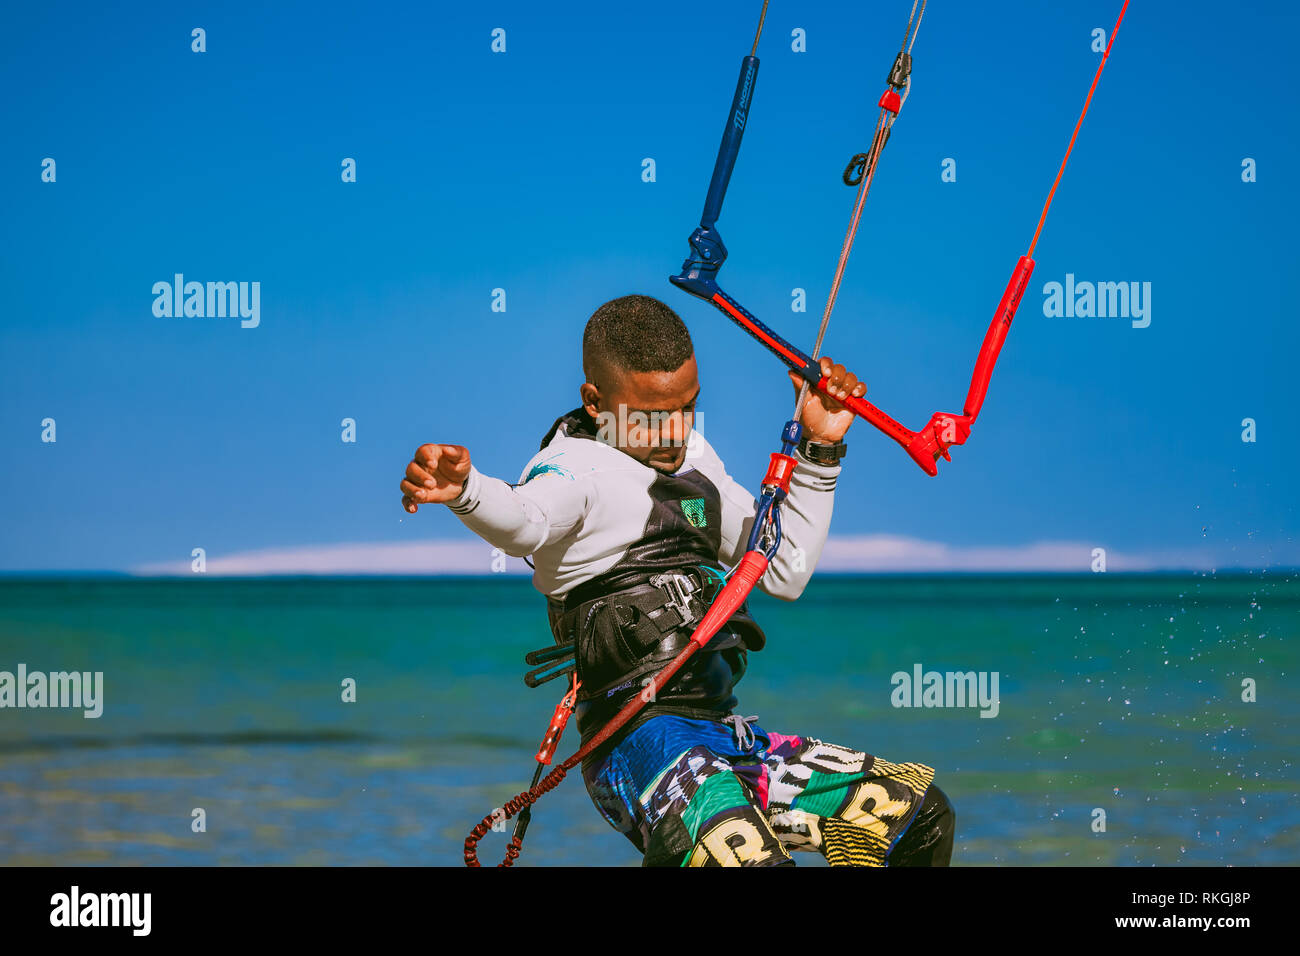 L'Egypte, Hurghada - 30 novembre, 2017 : le kite surfer holding rope debout sur le surf. Arrière-plan de la mer Rouge. L'activité en plein air. Extrem Banque D'Images